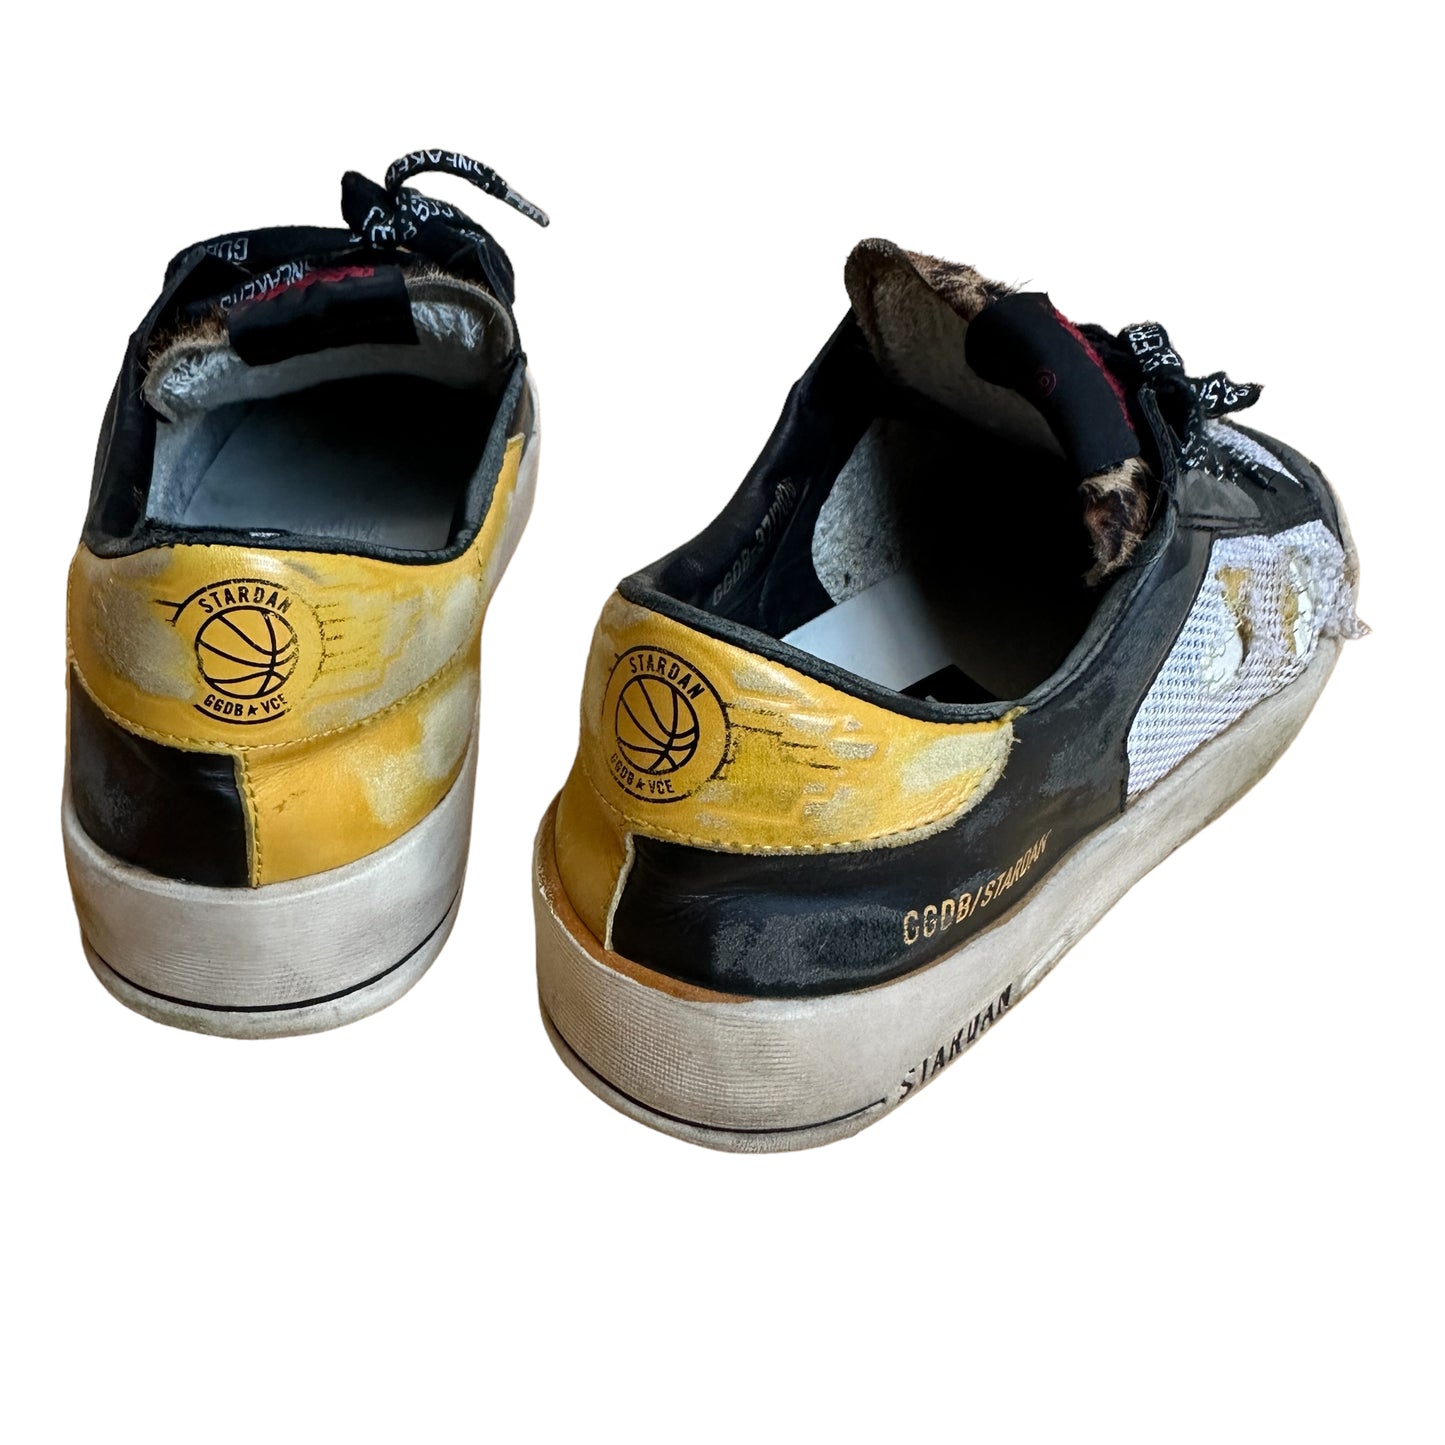 Black & Yellow Mesh Sneakers - 8